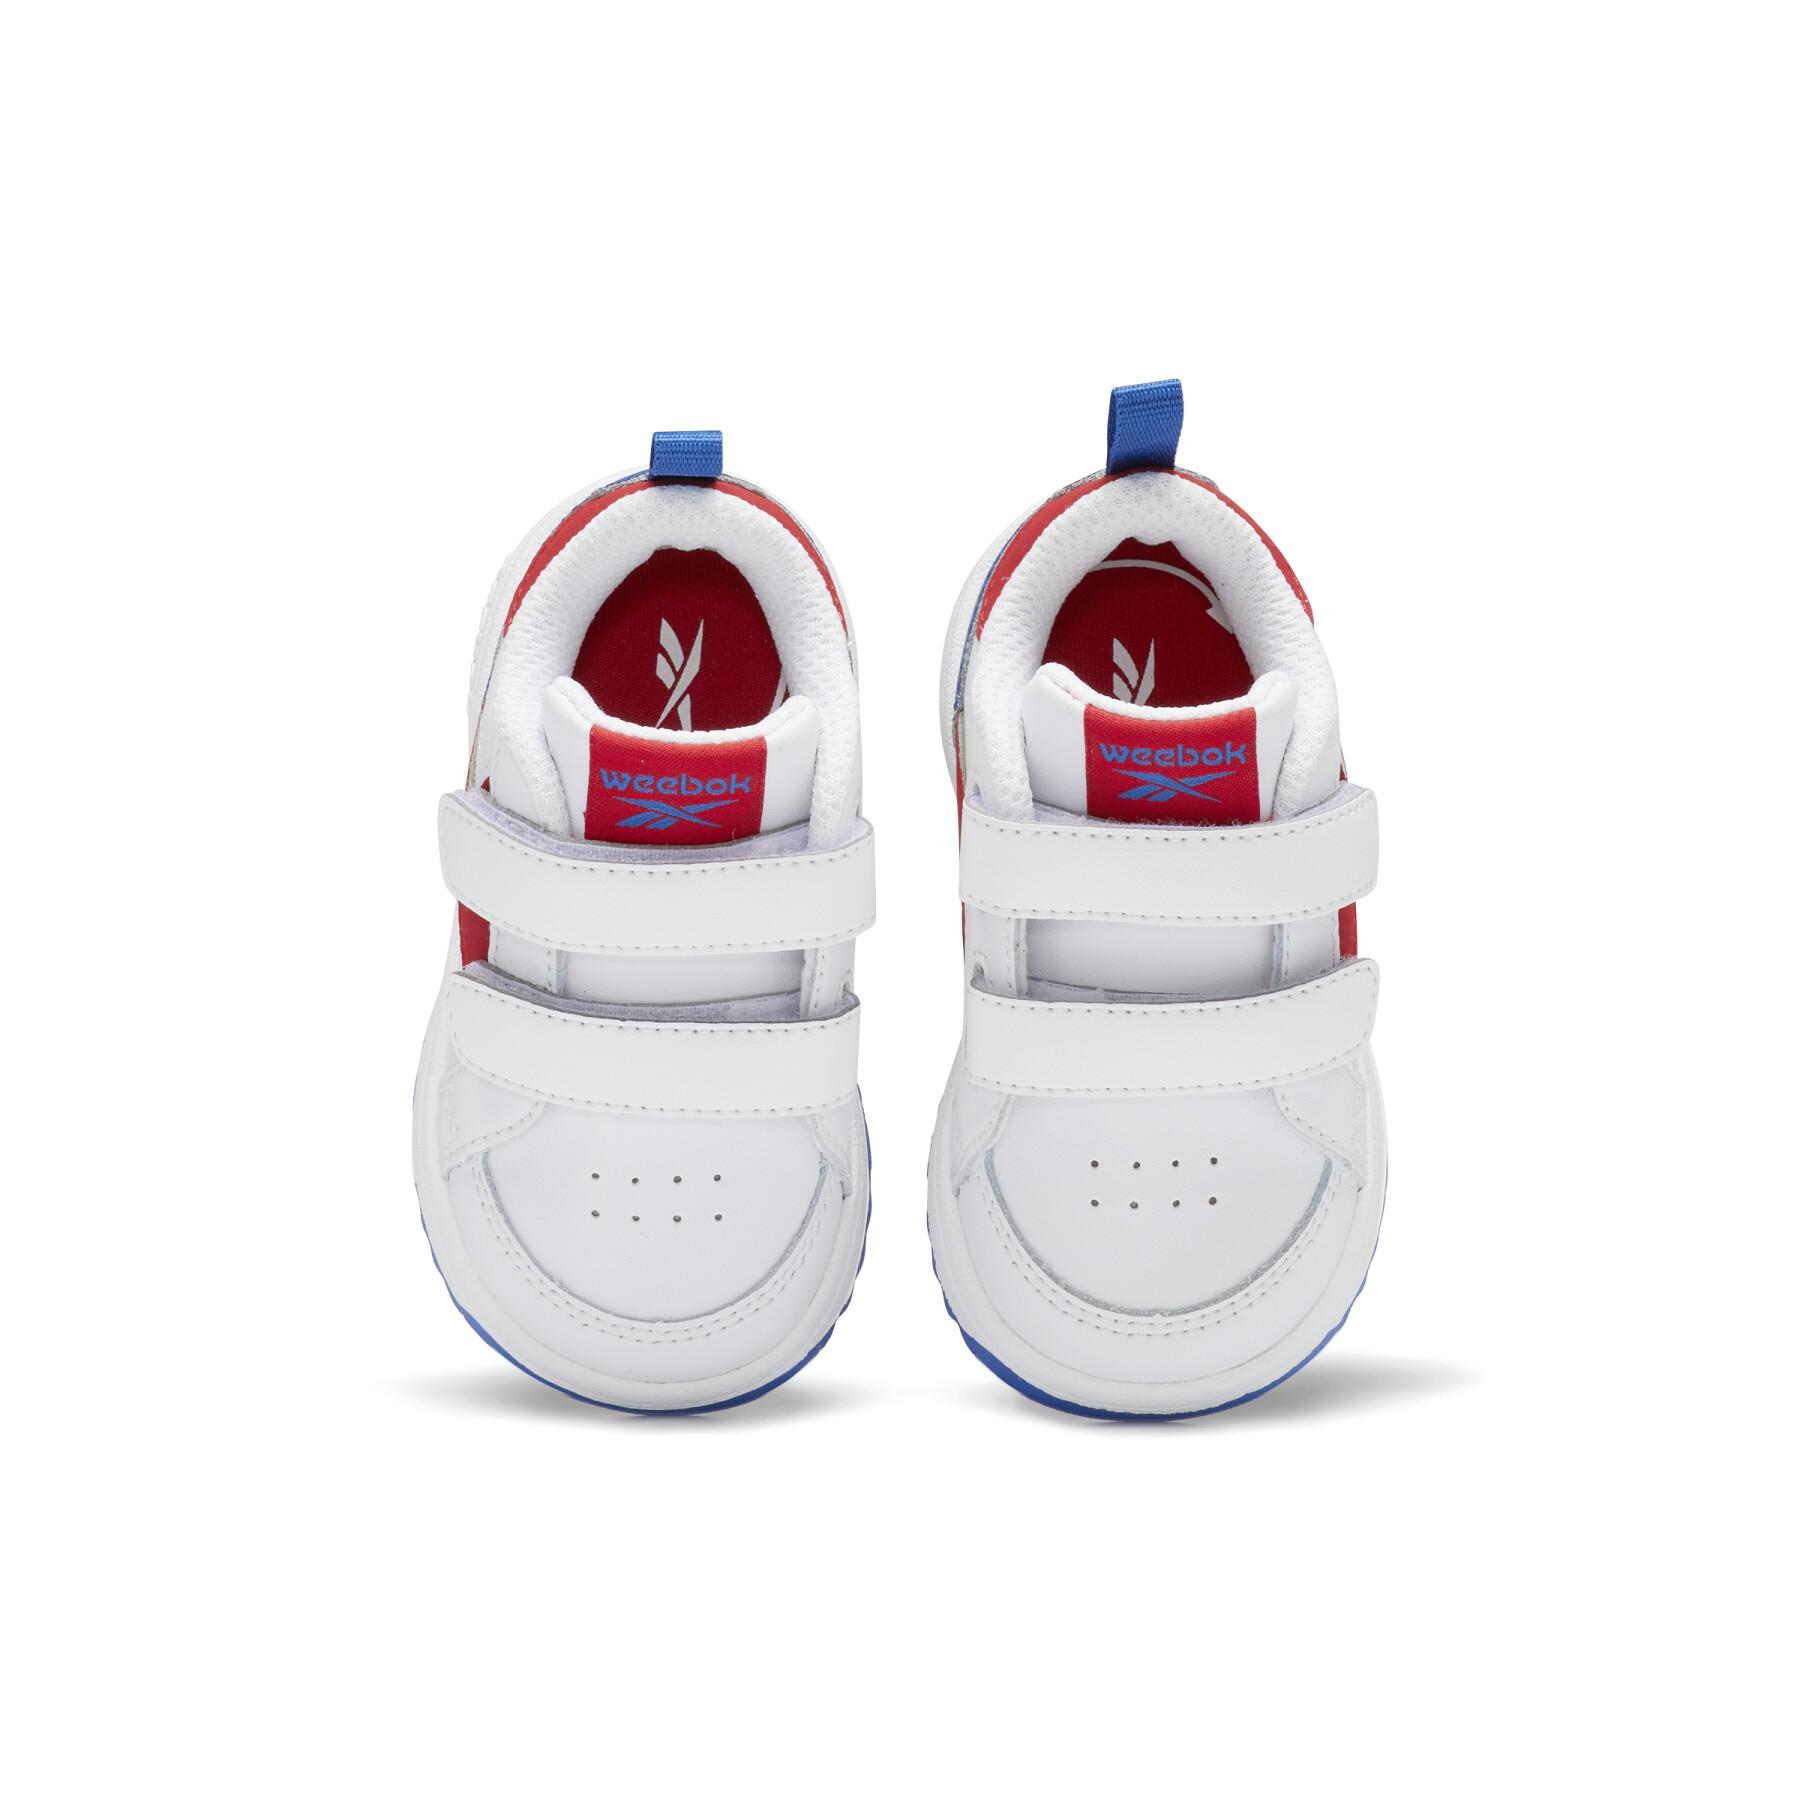 Children's sneakers Reebok Weebok Clasp